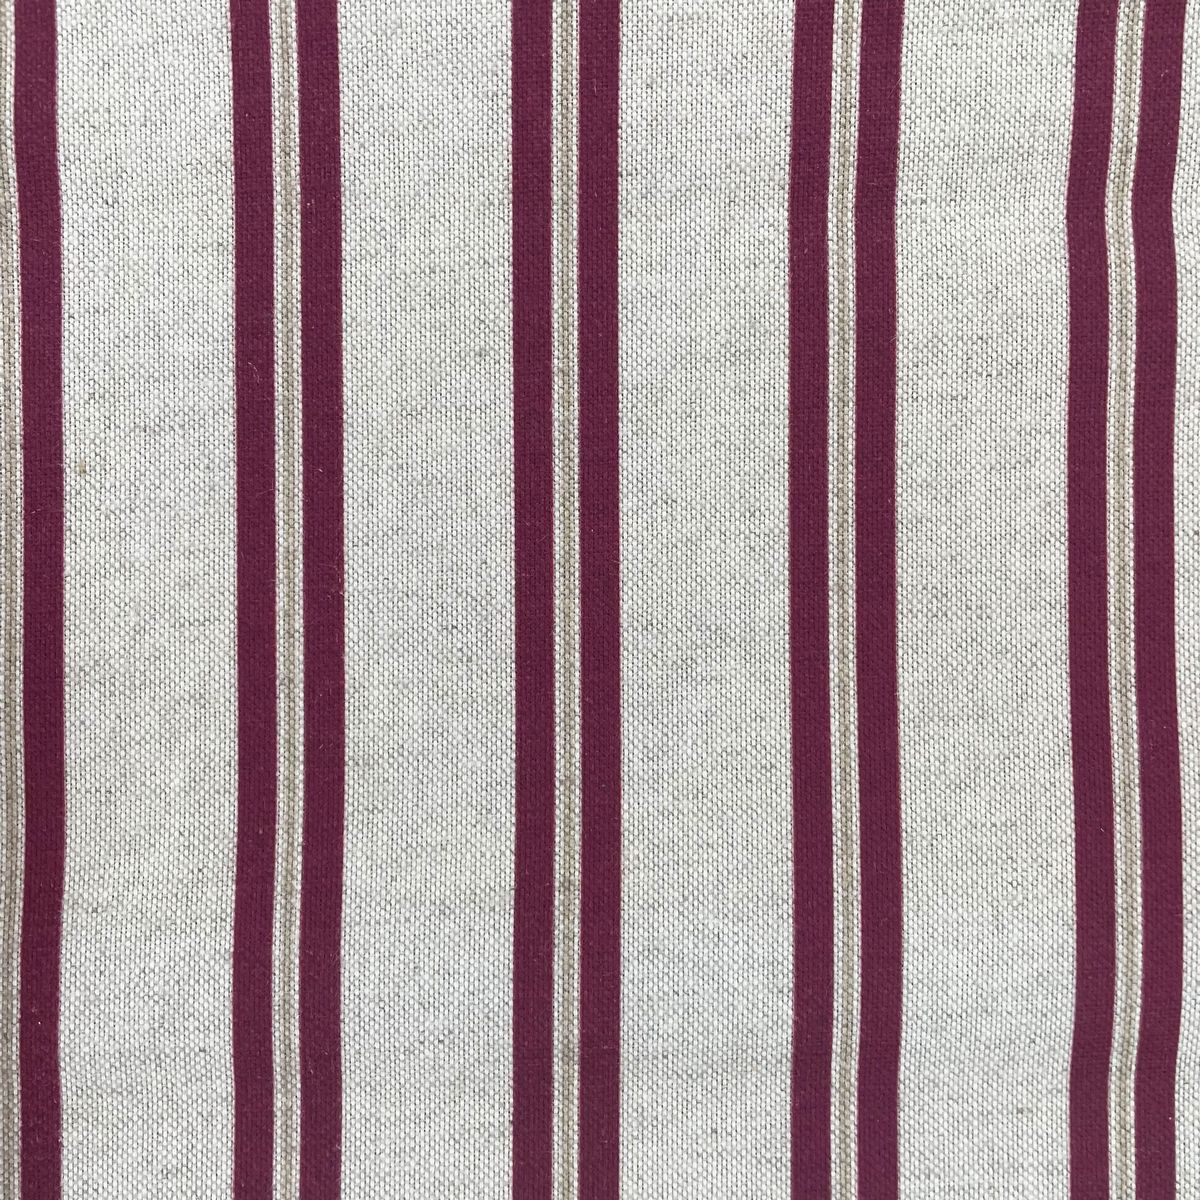 Winterfell Rioja Fabric by Chatham Glyn